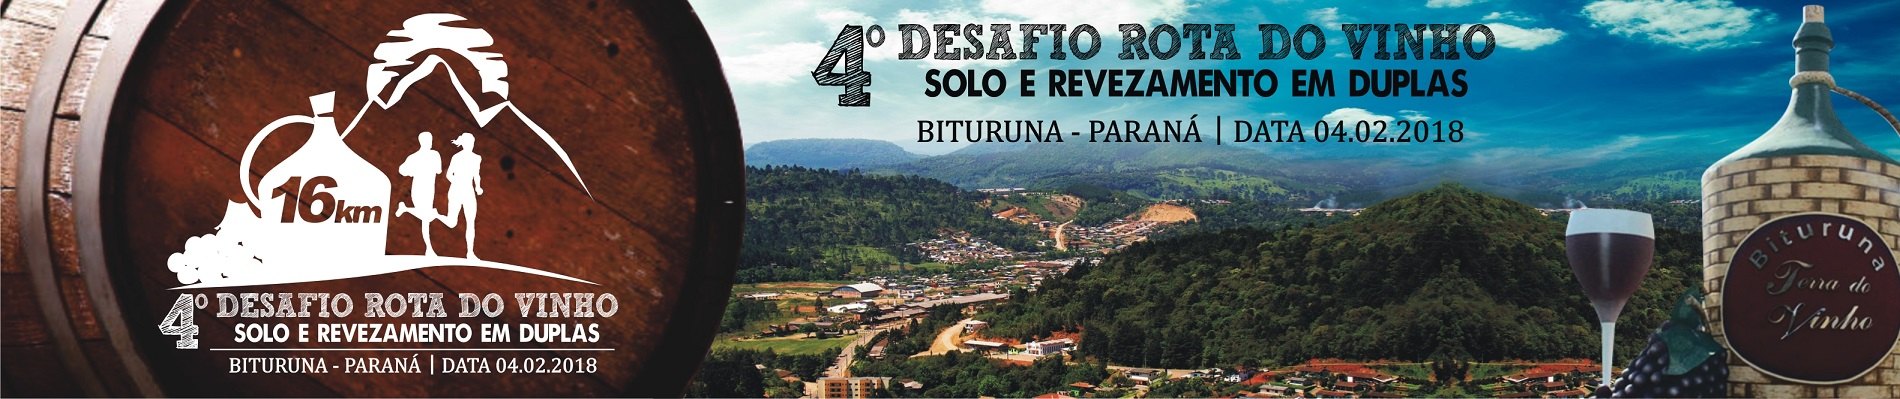 4º DESAFIO ROTA DO VINHO - 2018 - Imagem de topo